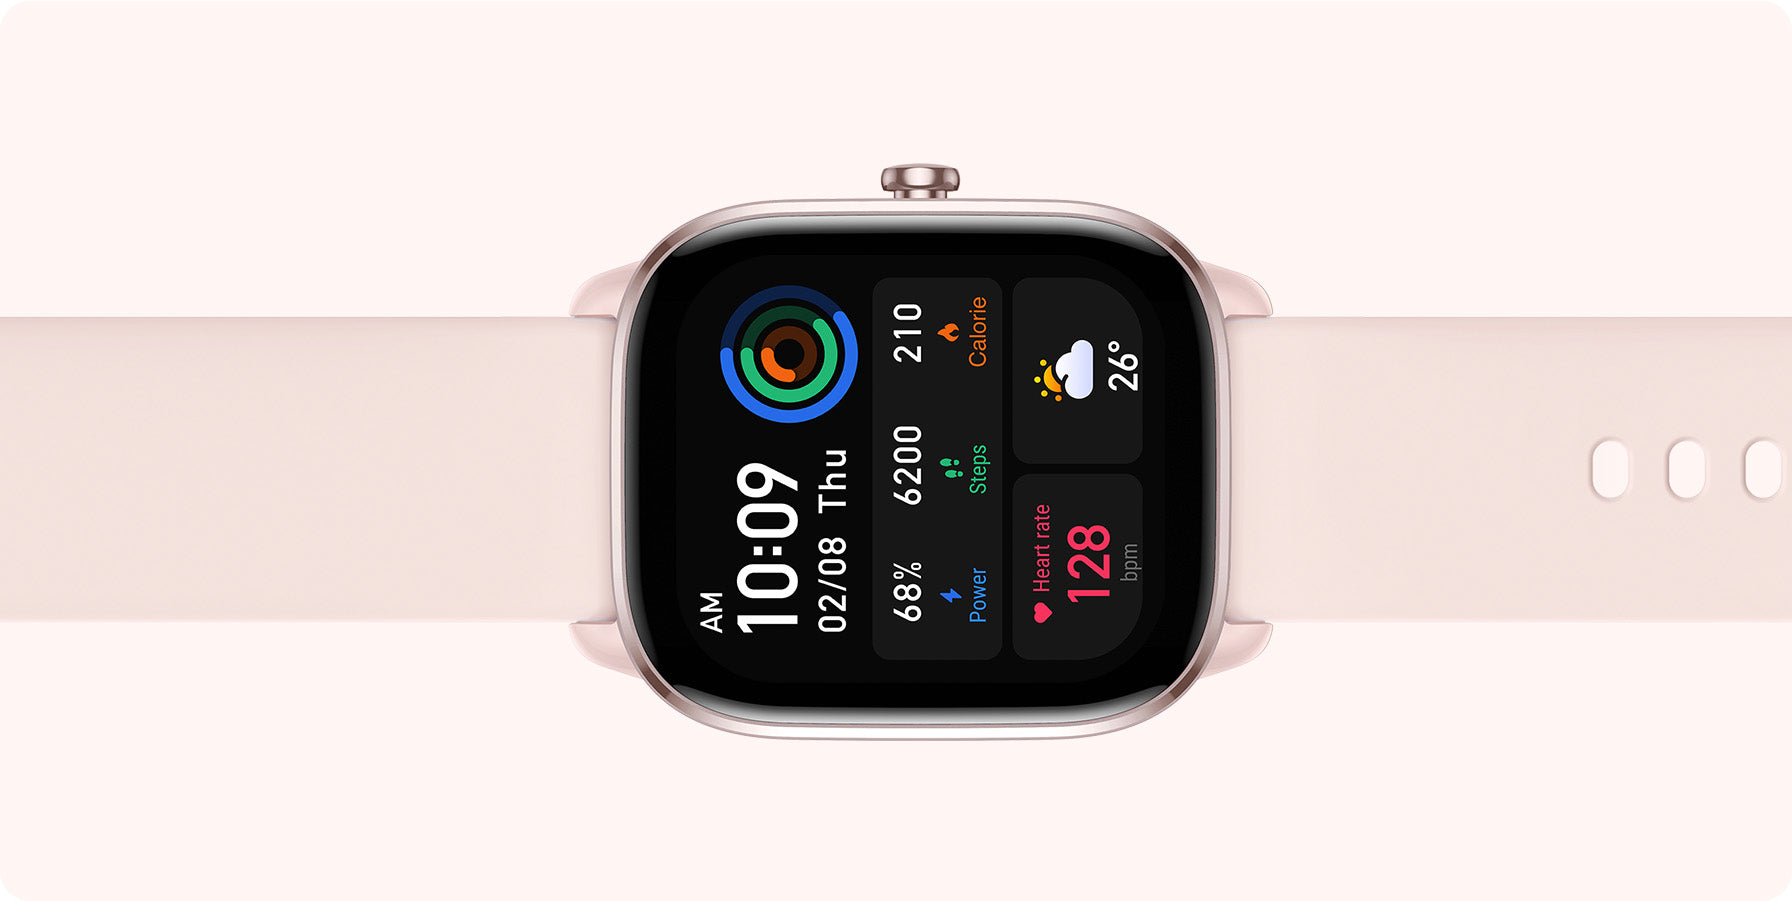 Amazfit GTS 4 Smartwatch - Infinite Pink - Forestals